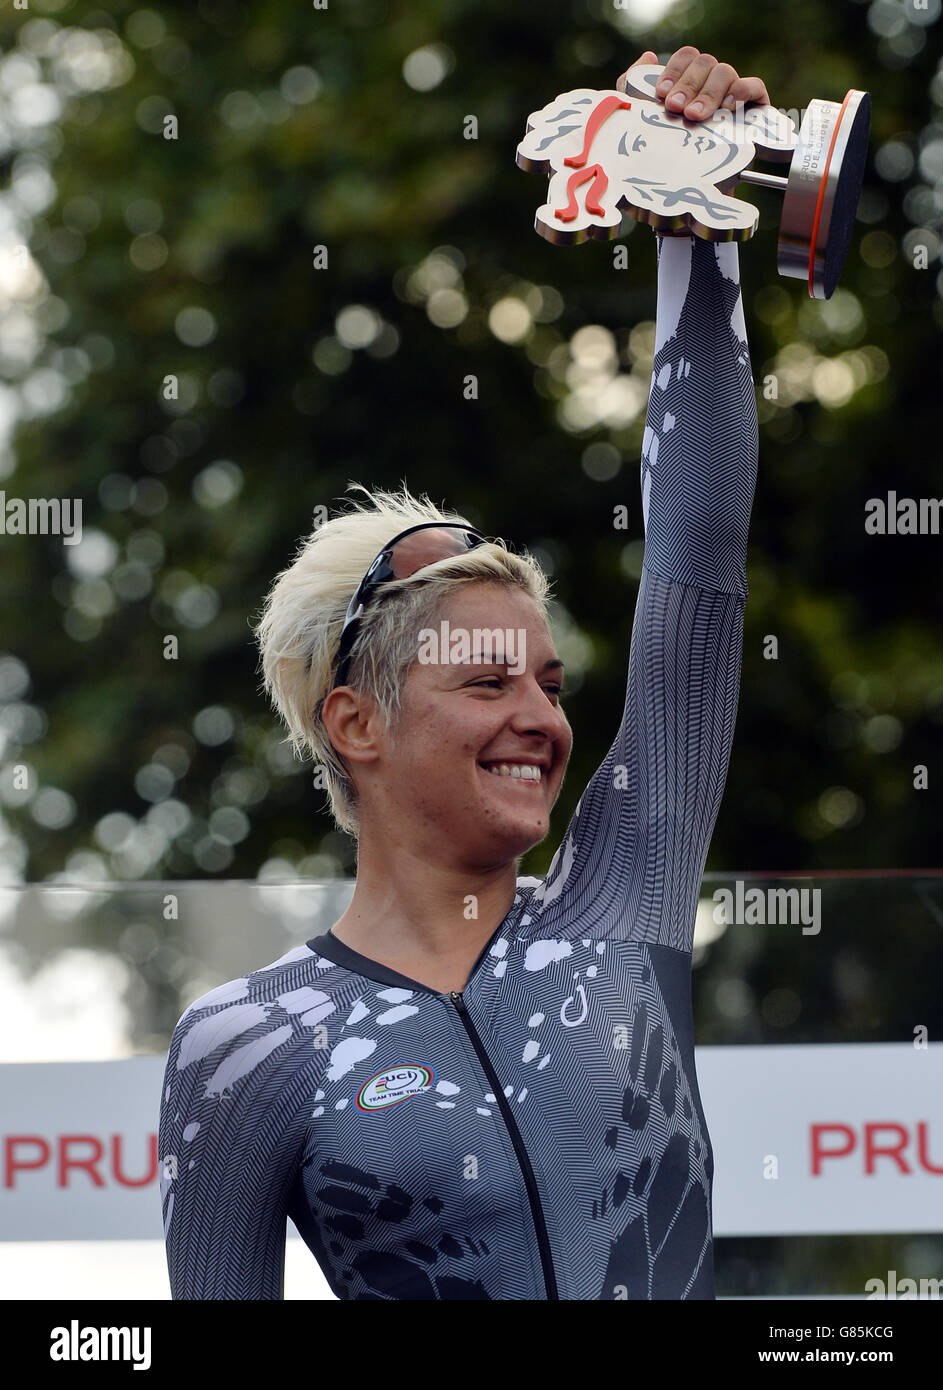 Barbara Guarischi en el podio de los ganadores después de ganar el Gran Premio Prudential RideLondon en el primer día del Prudential RideLondon, Londres. Foto de stock